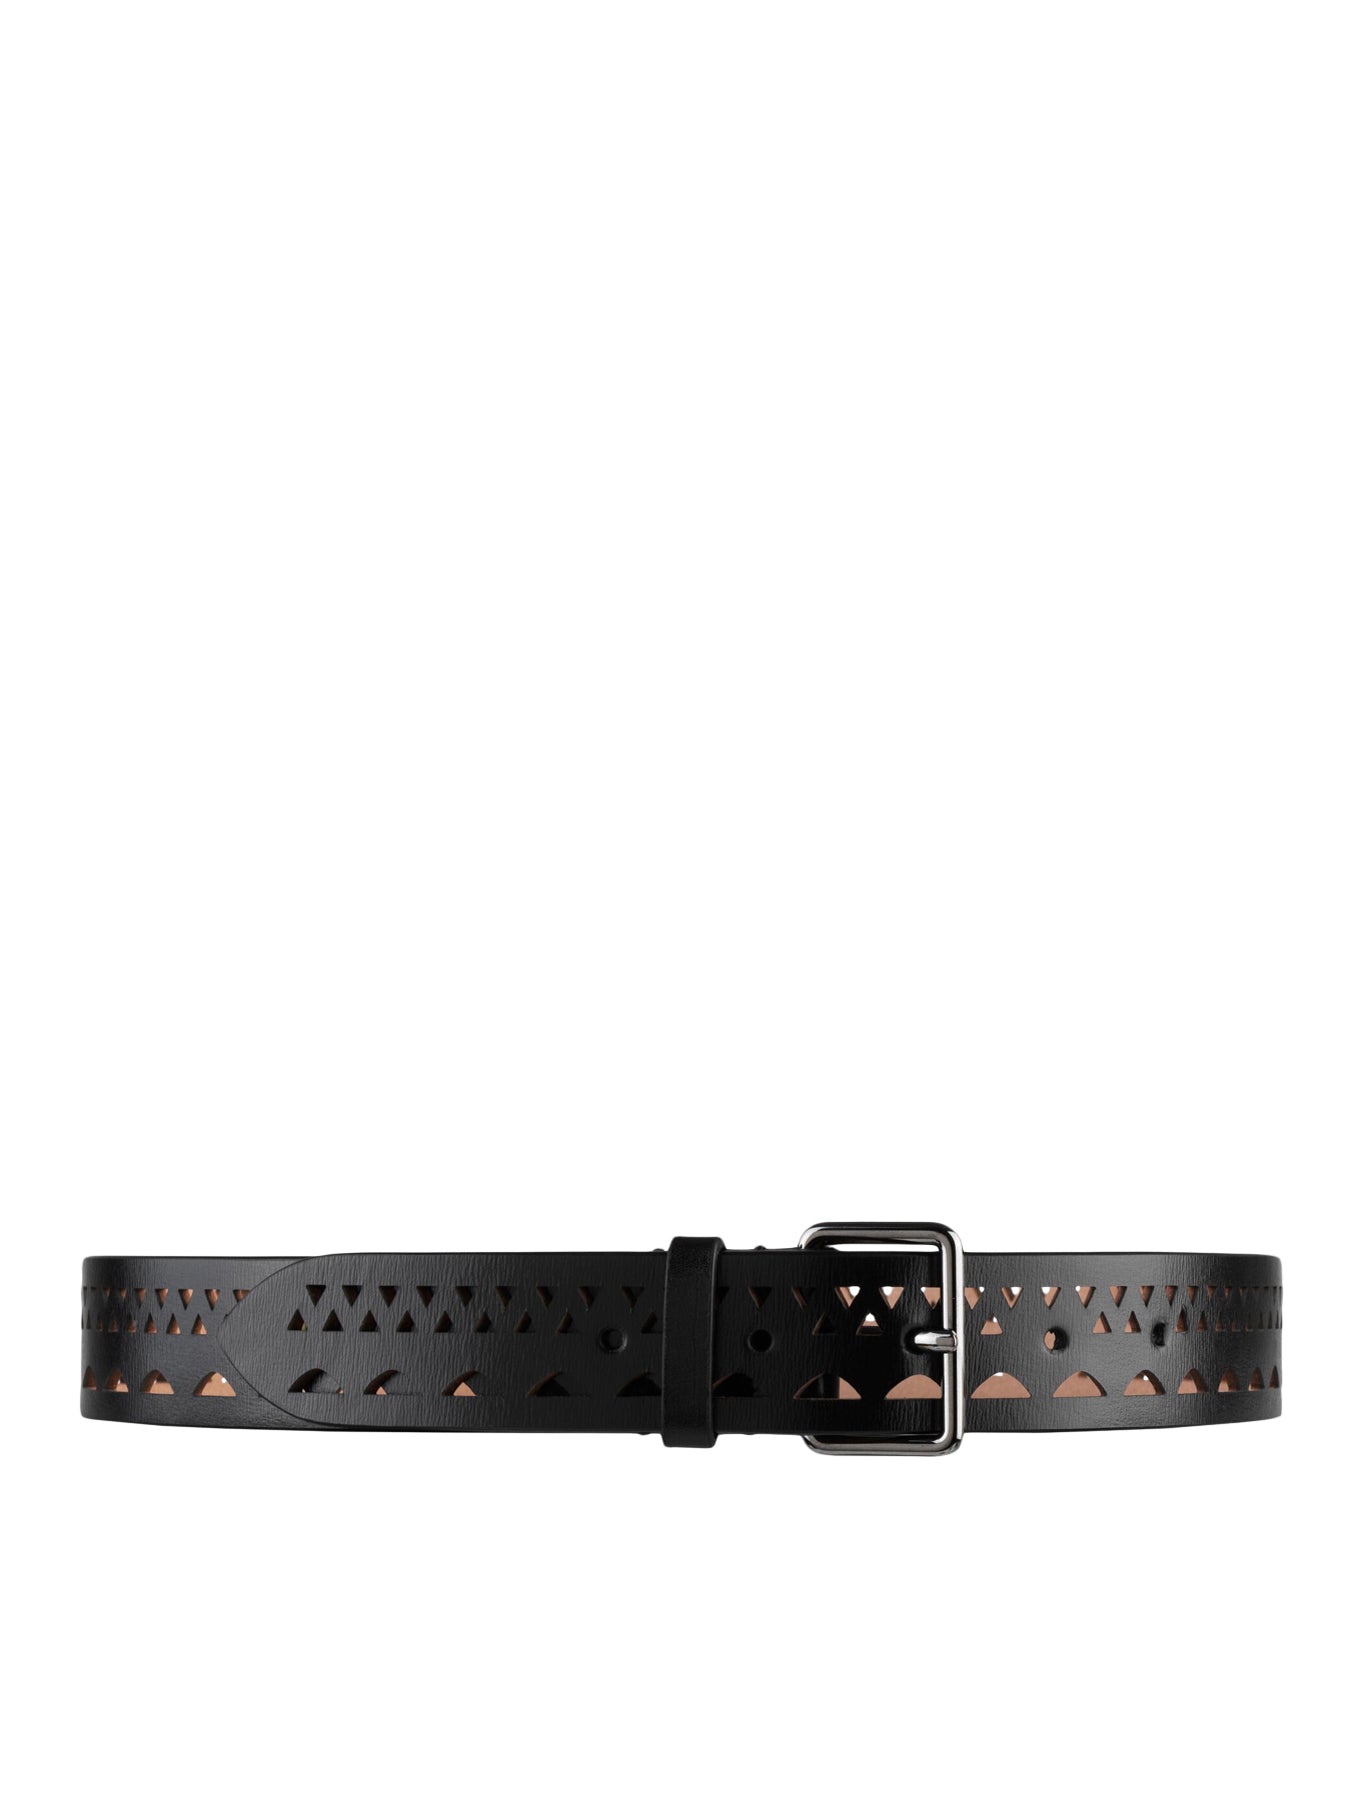 Louis Vuitton Black Leather Initials Belt 75CM